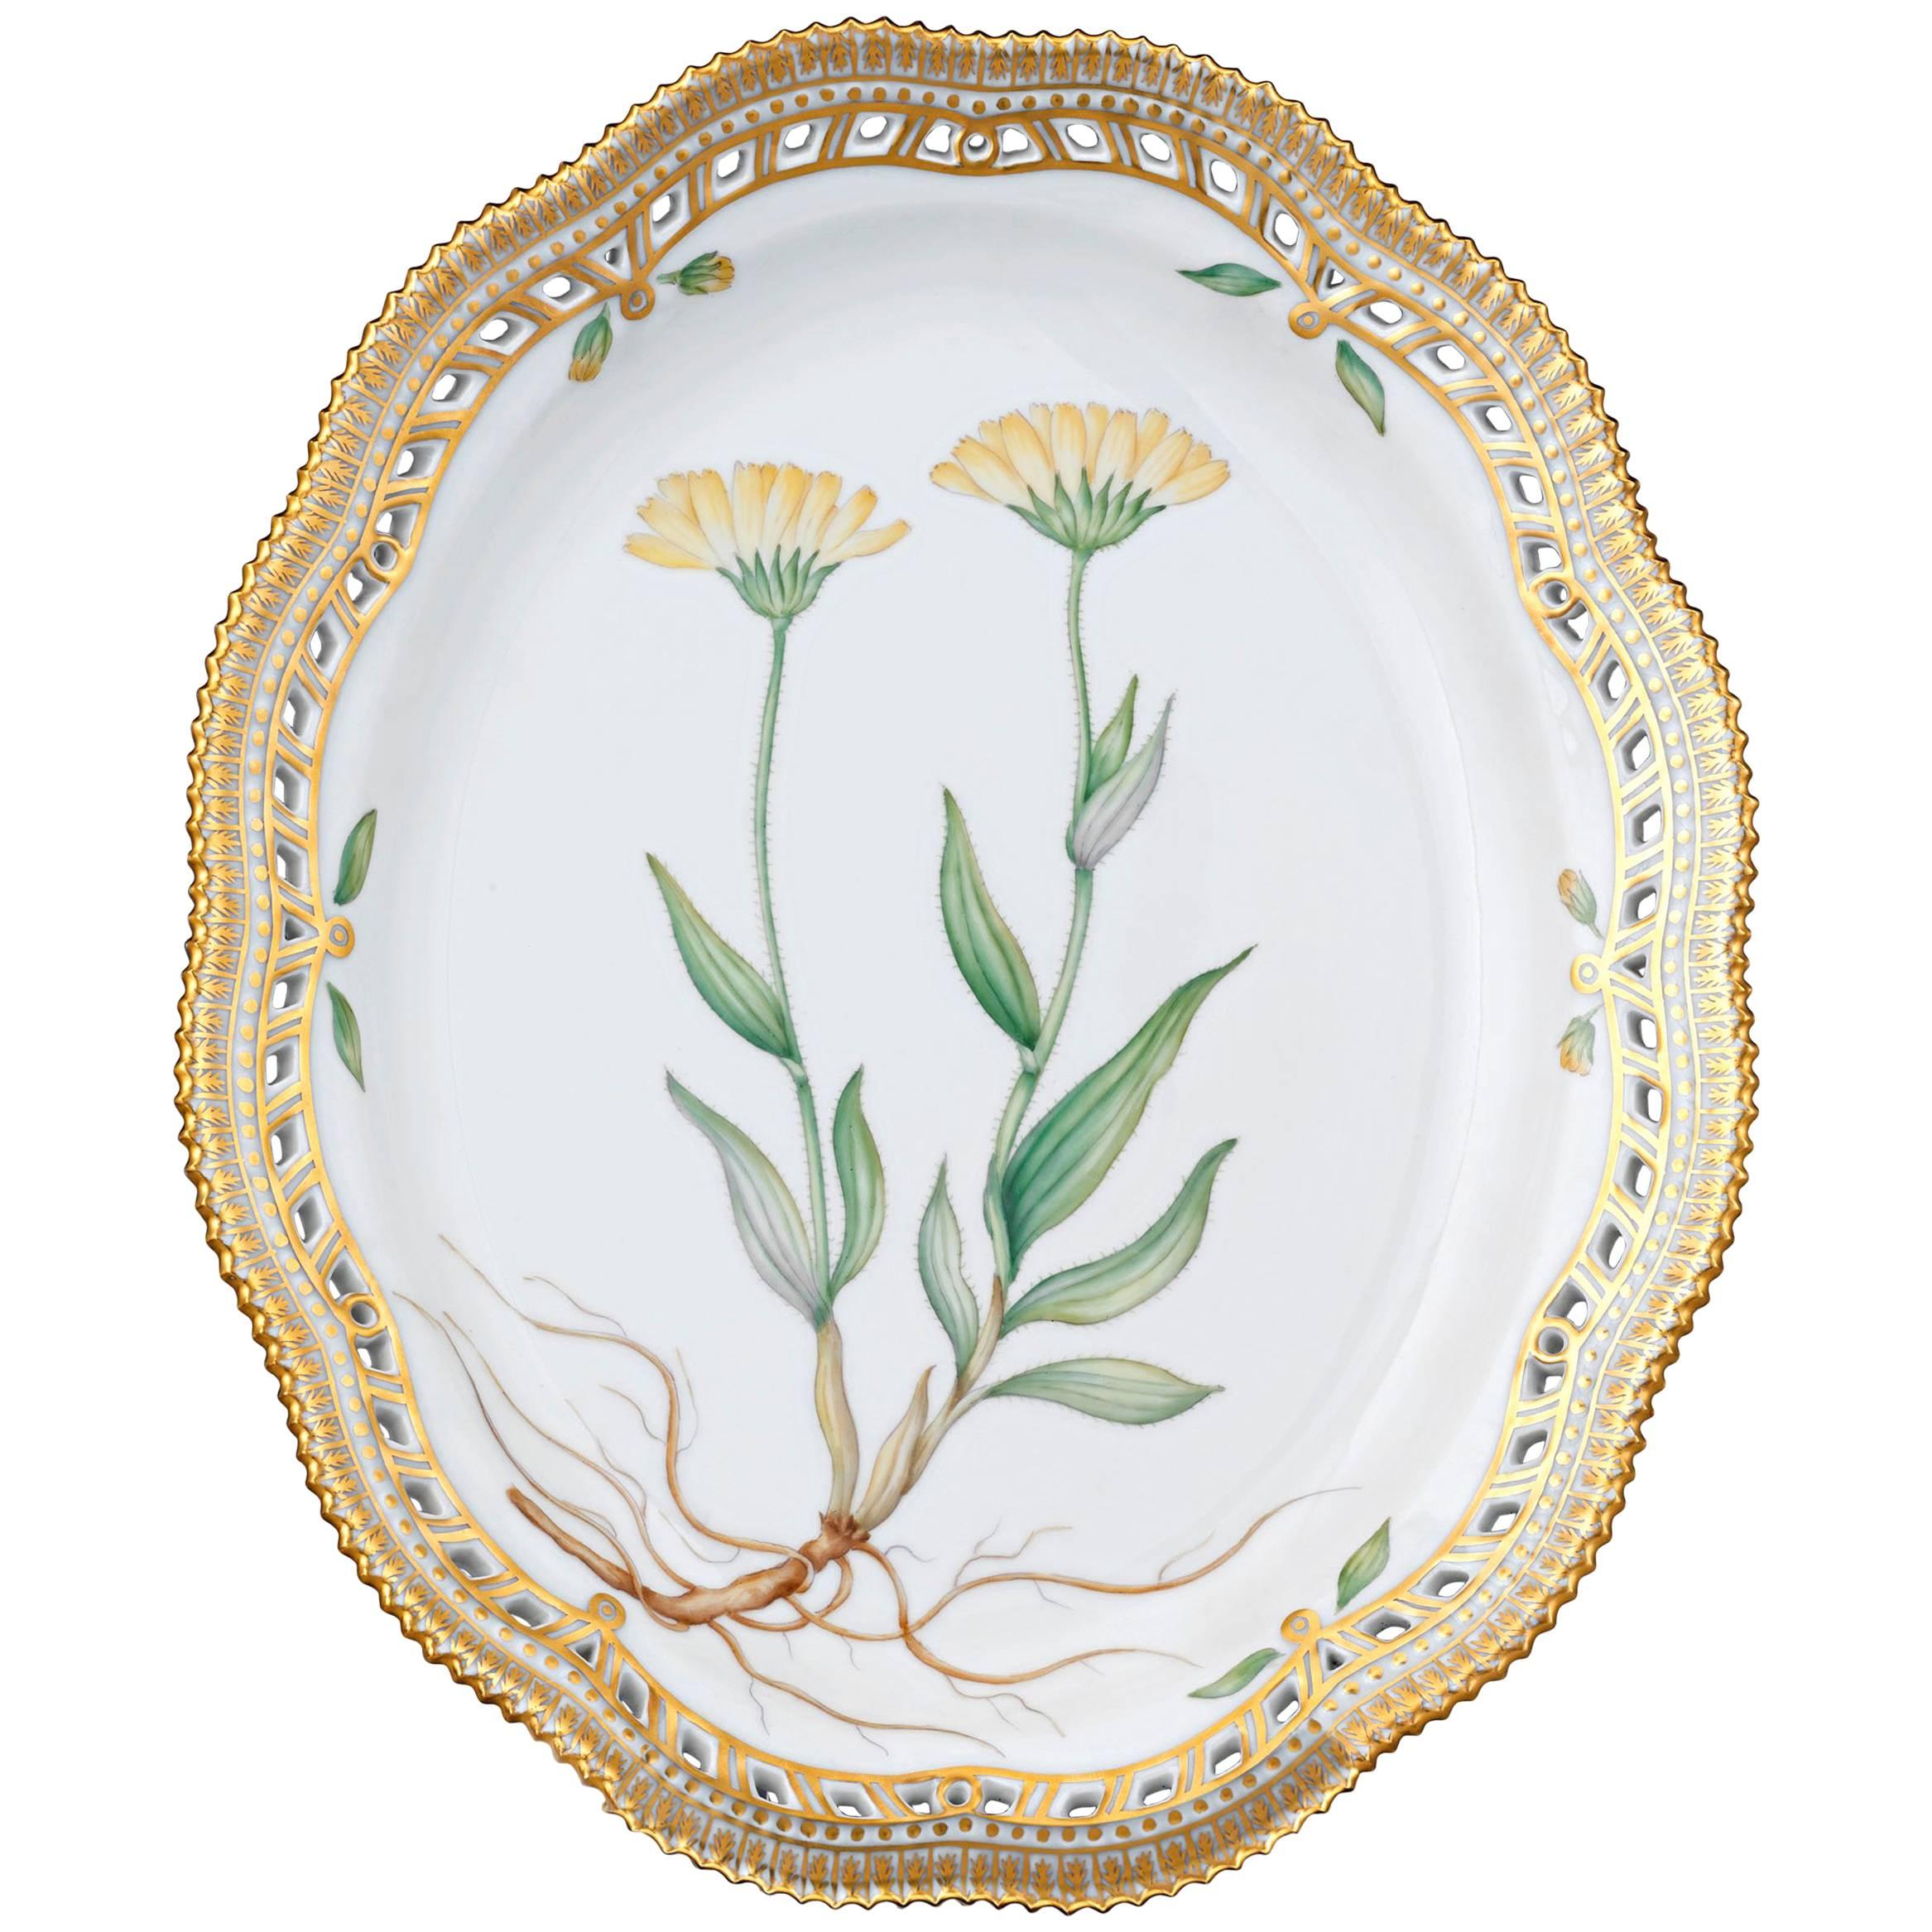 Flora Danica Oval Porcelain Dish by Royal Copenhagen